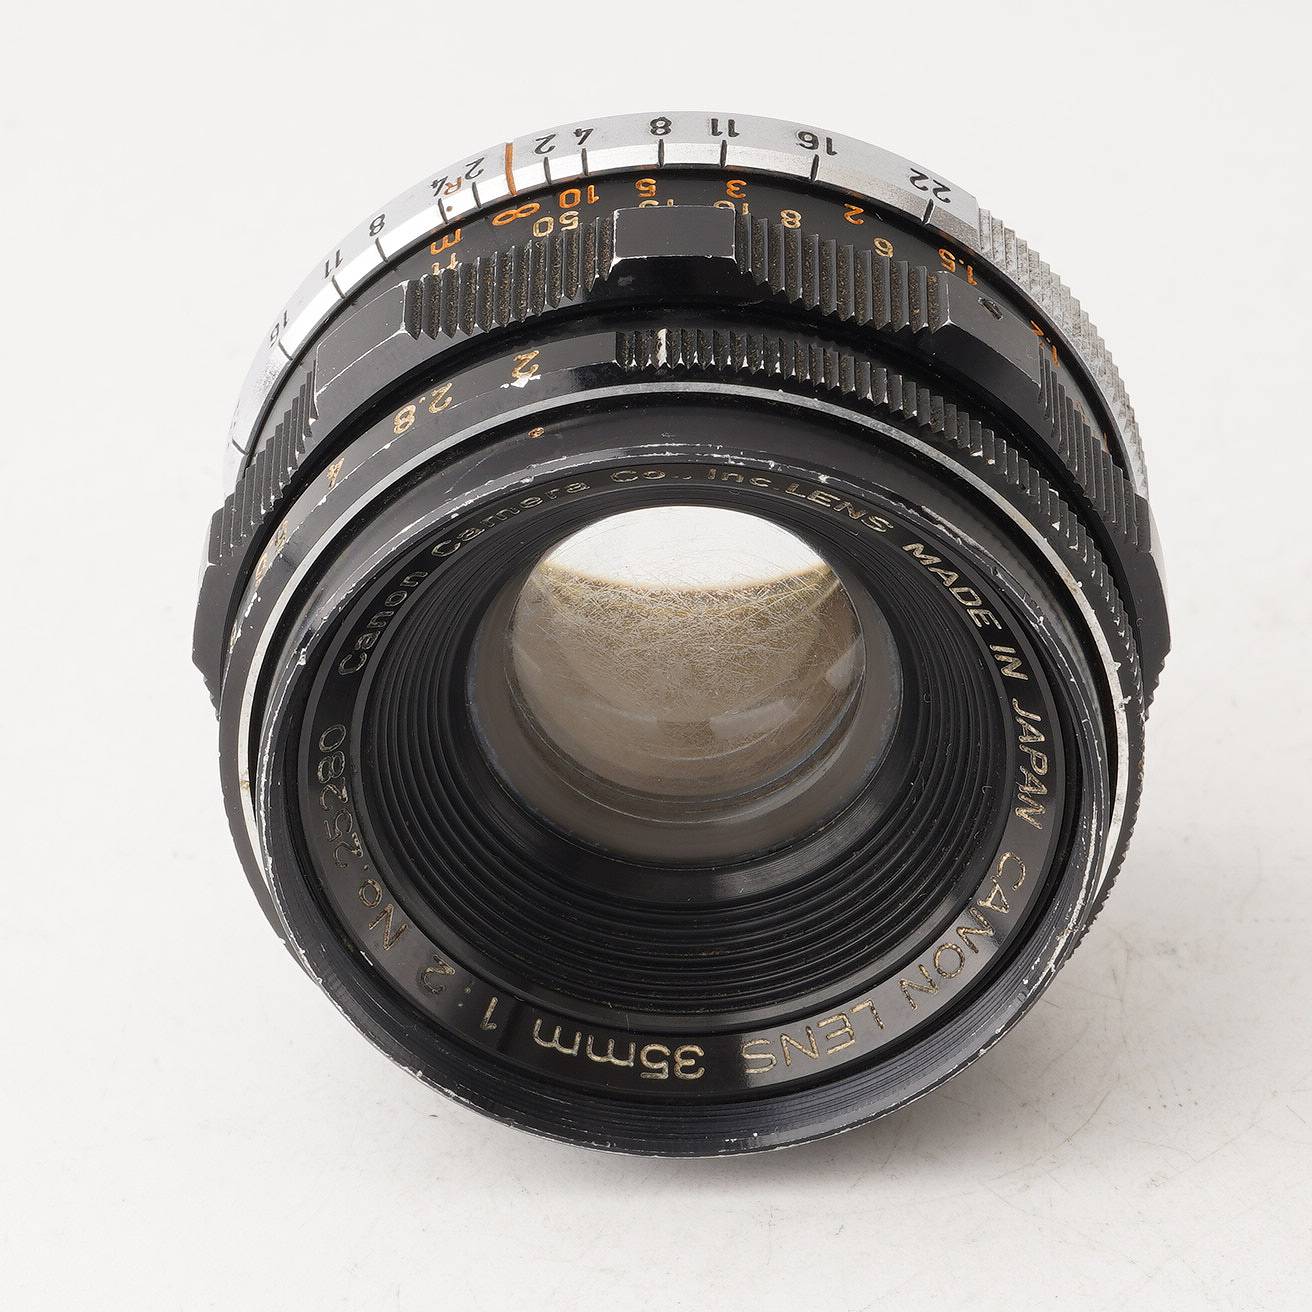 ライカLマウントレンズ Canon 35mm f2.8 - レンズ(単焦点)